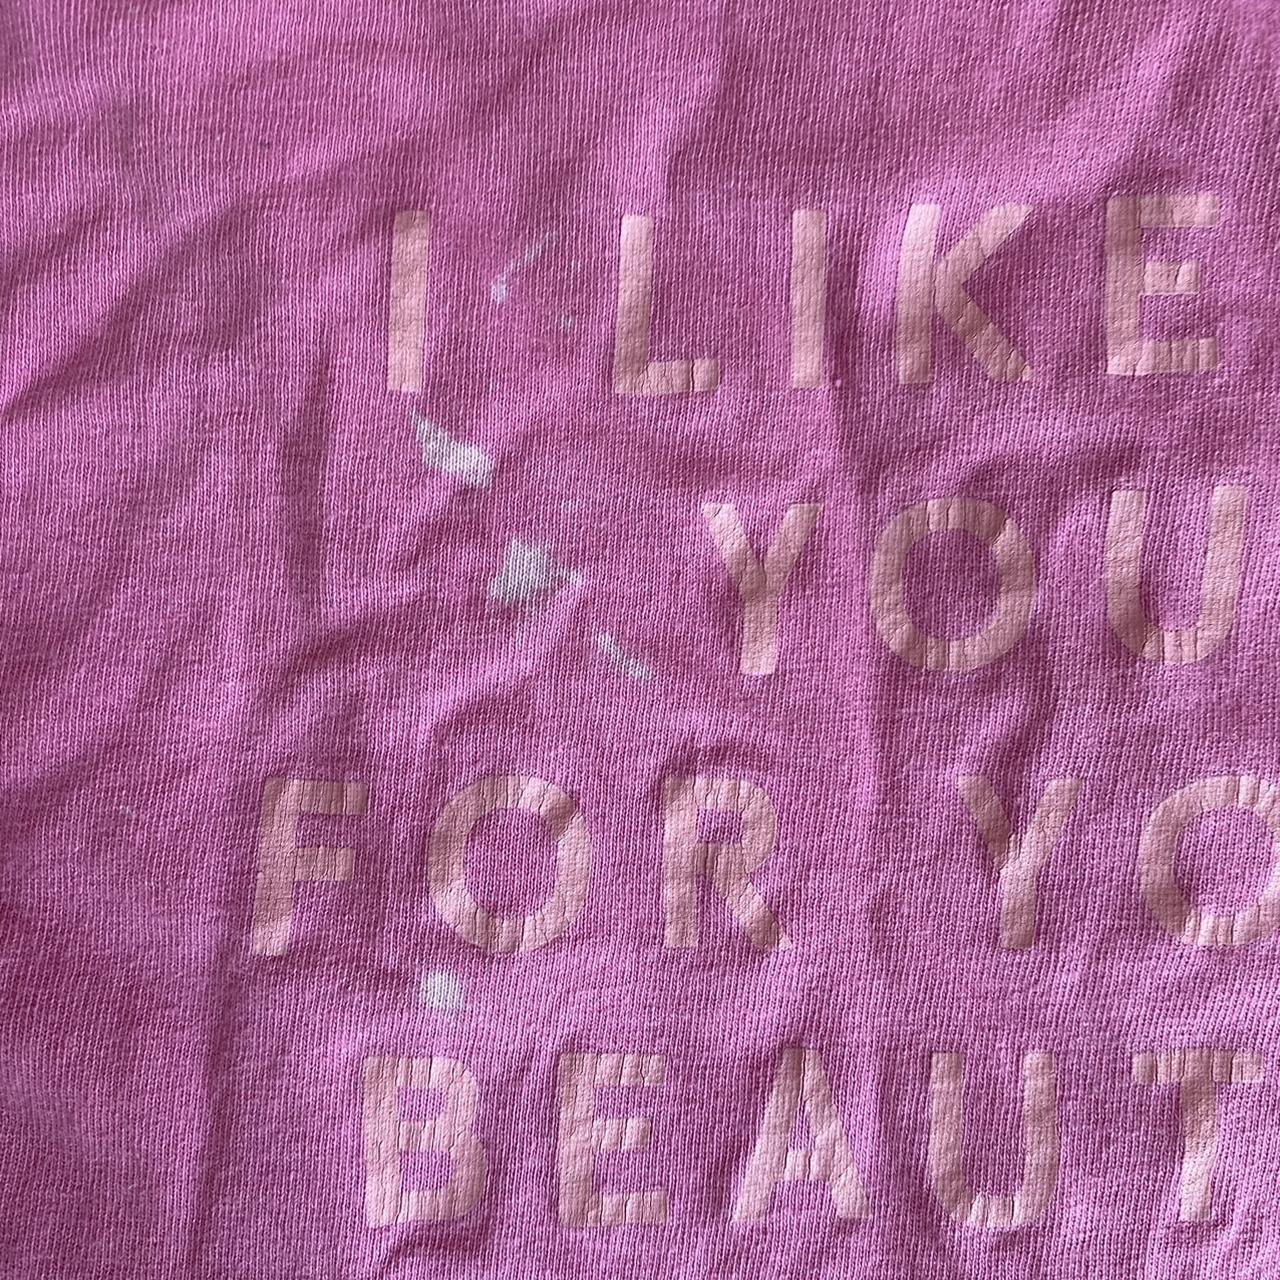 pink xl the 1975 official t-shirt iliwys motif on... - Depop